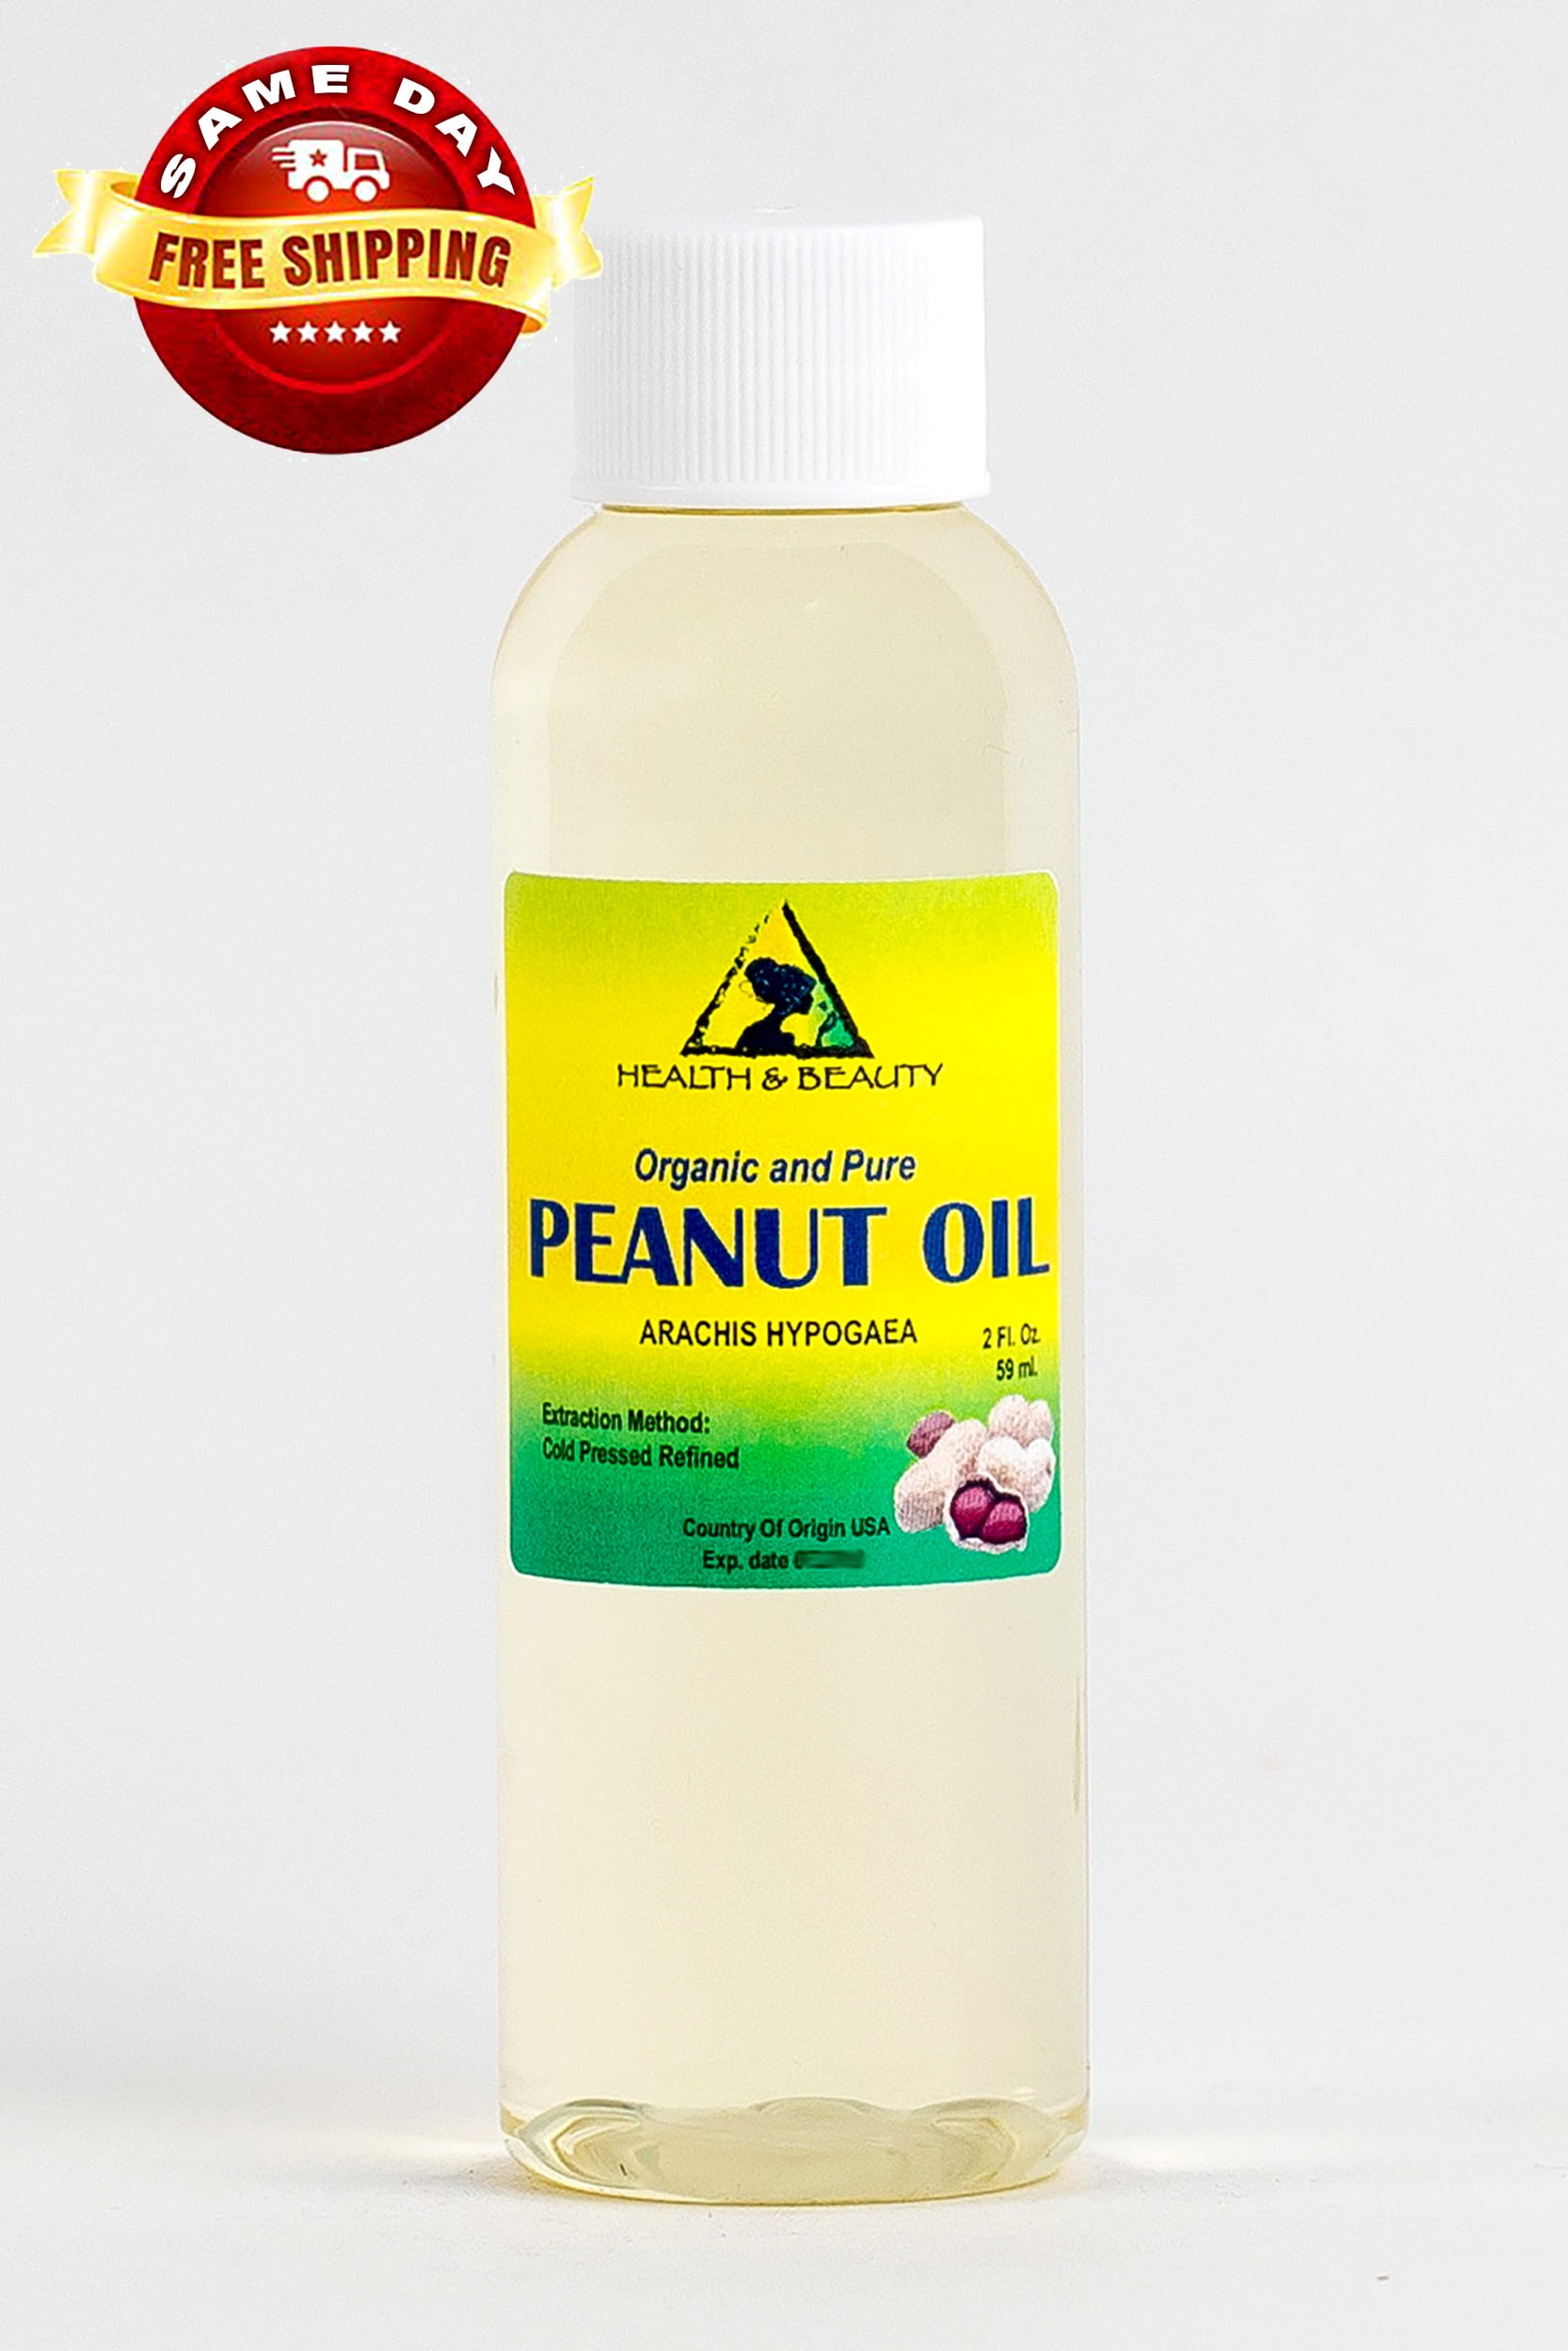 Apricot kernel oil 100 pure organic cold pressed unrefined 8 LB bulk 128 oz  body